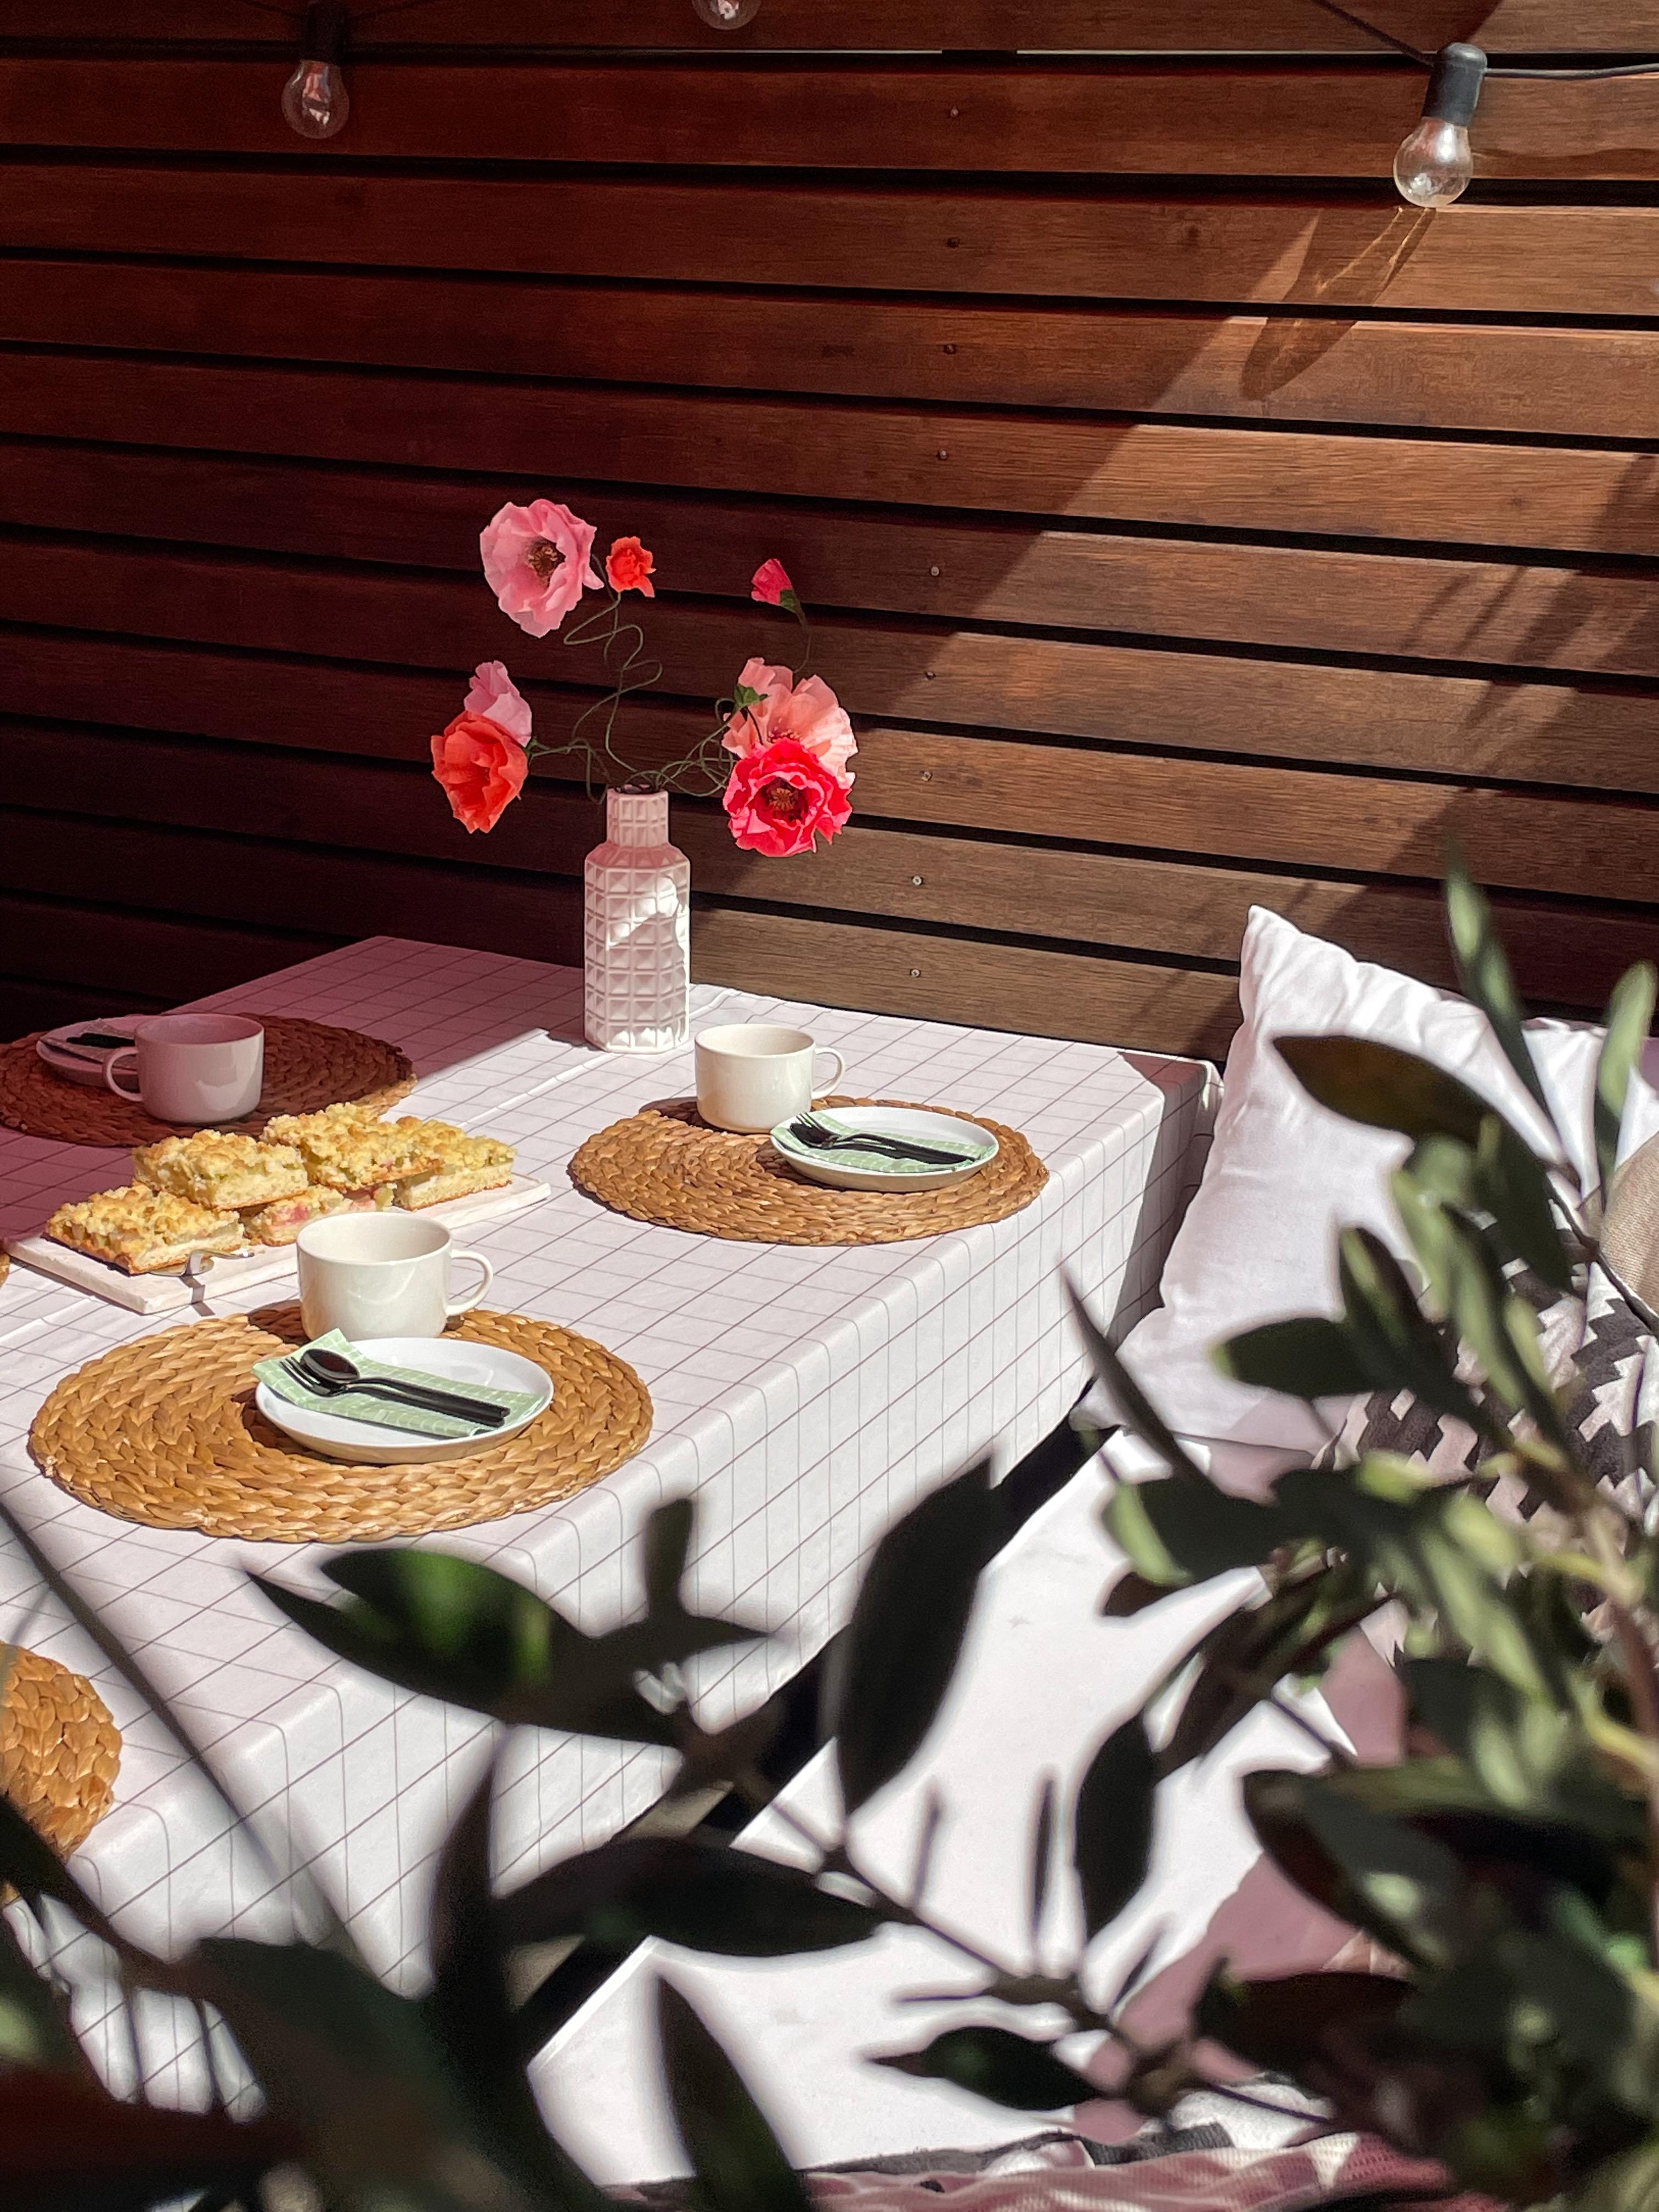 Auf der Sonnenseite ...

#GedeckterTisch #Garten #Terrasse #Draussen #Kaffee #Kaffeepause